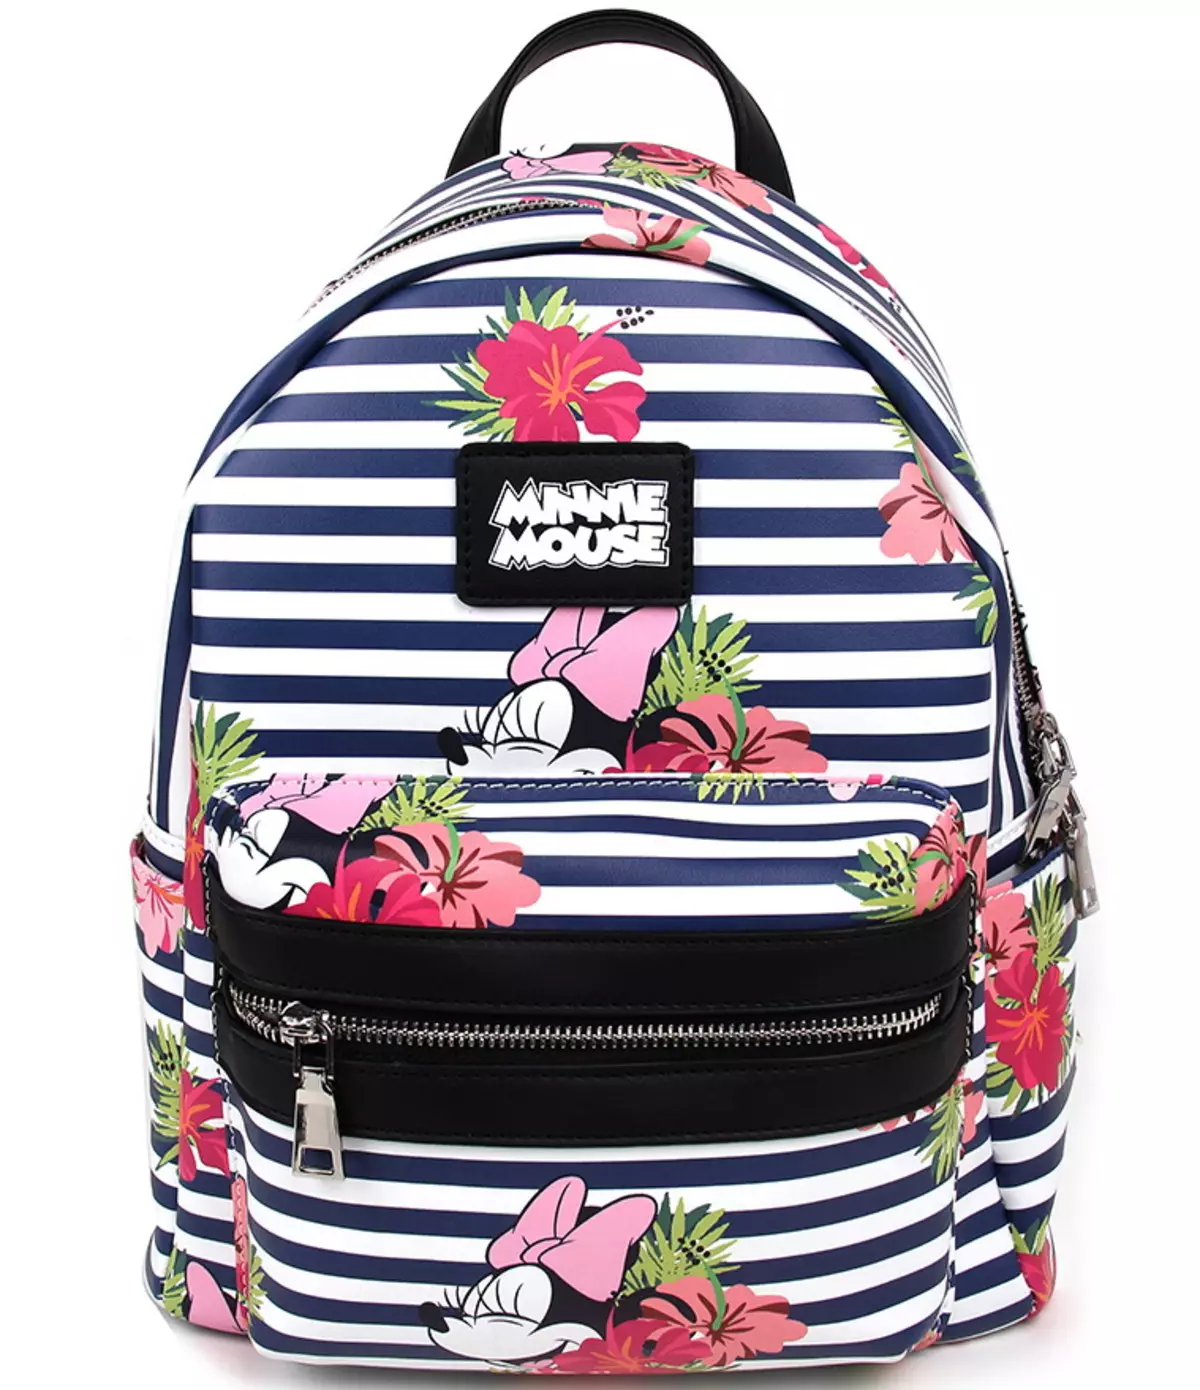 Рюкзаки Kari: огляд жіночих моделей, шкільні рюкзаки для дівчаток і хлопчиків, білі і чорні рюкзаки інших брендів, представлених в магазині 15431_41